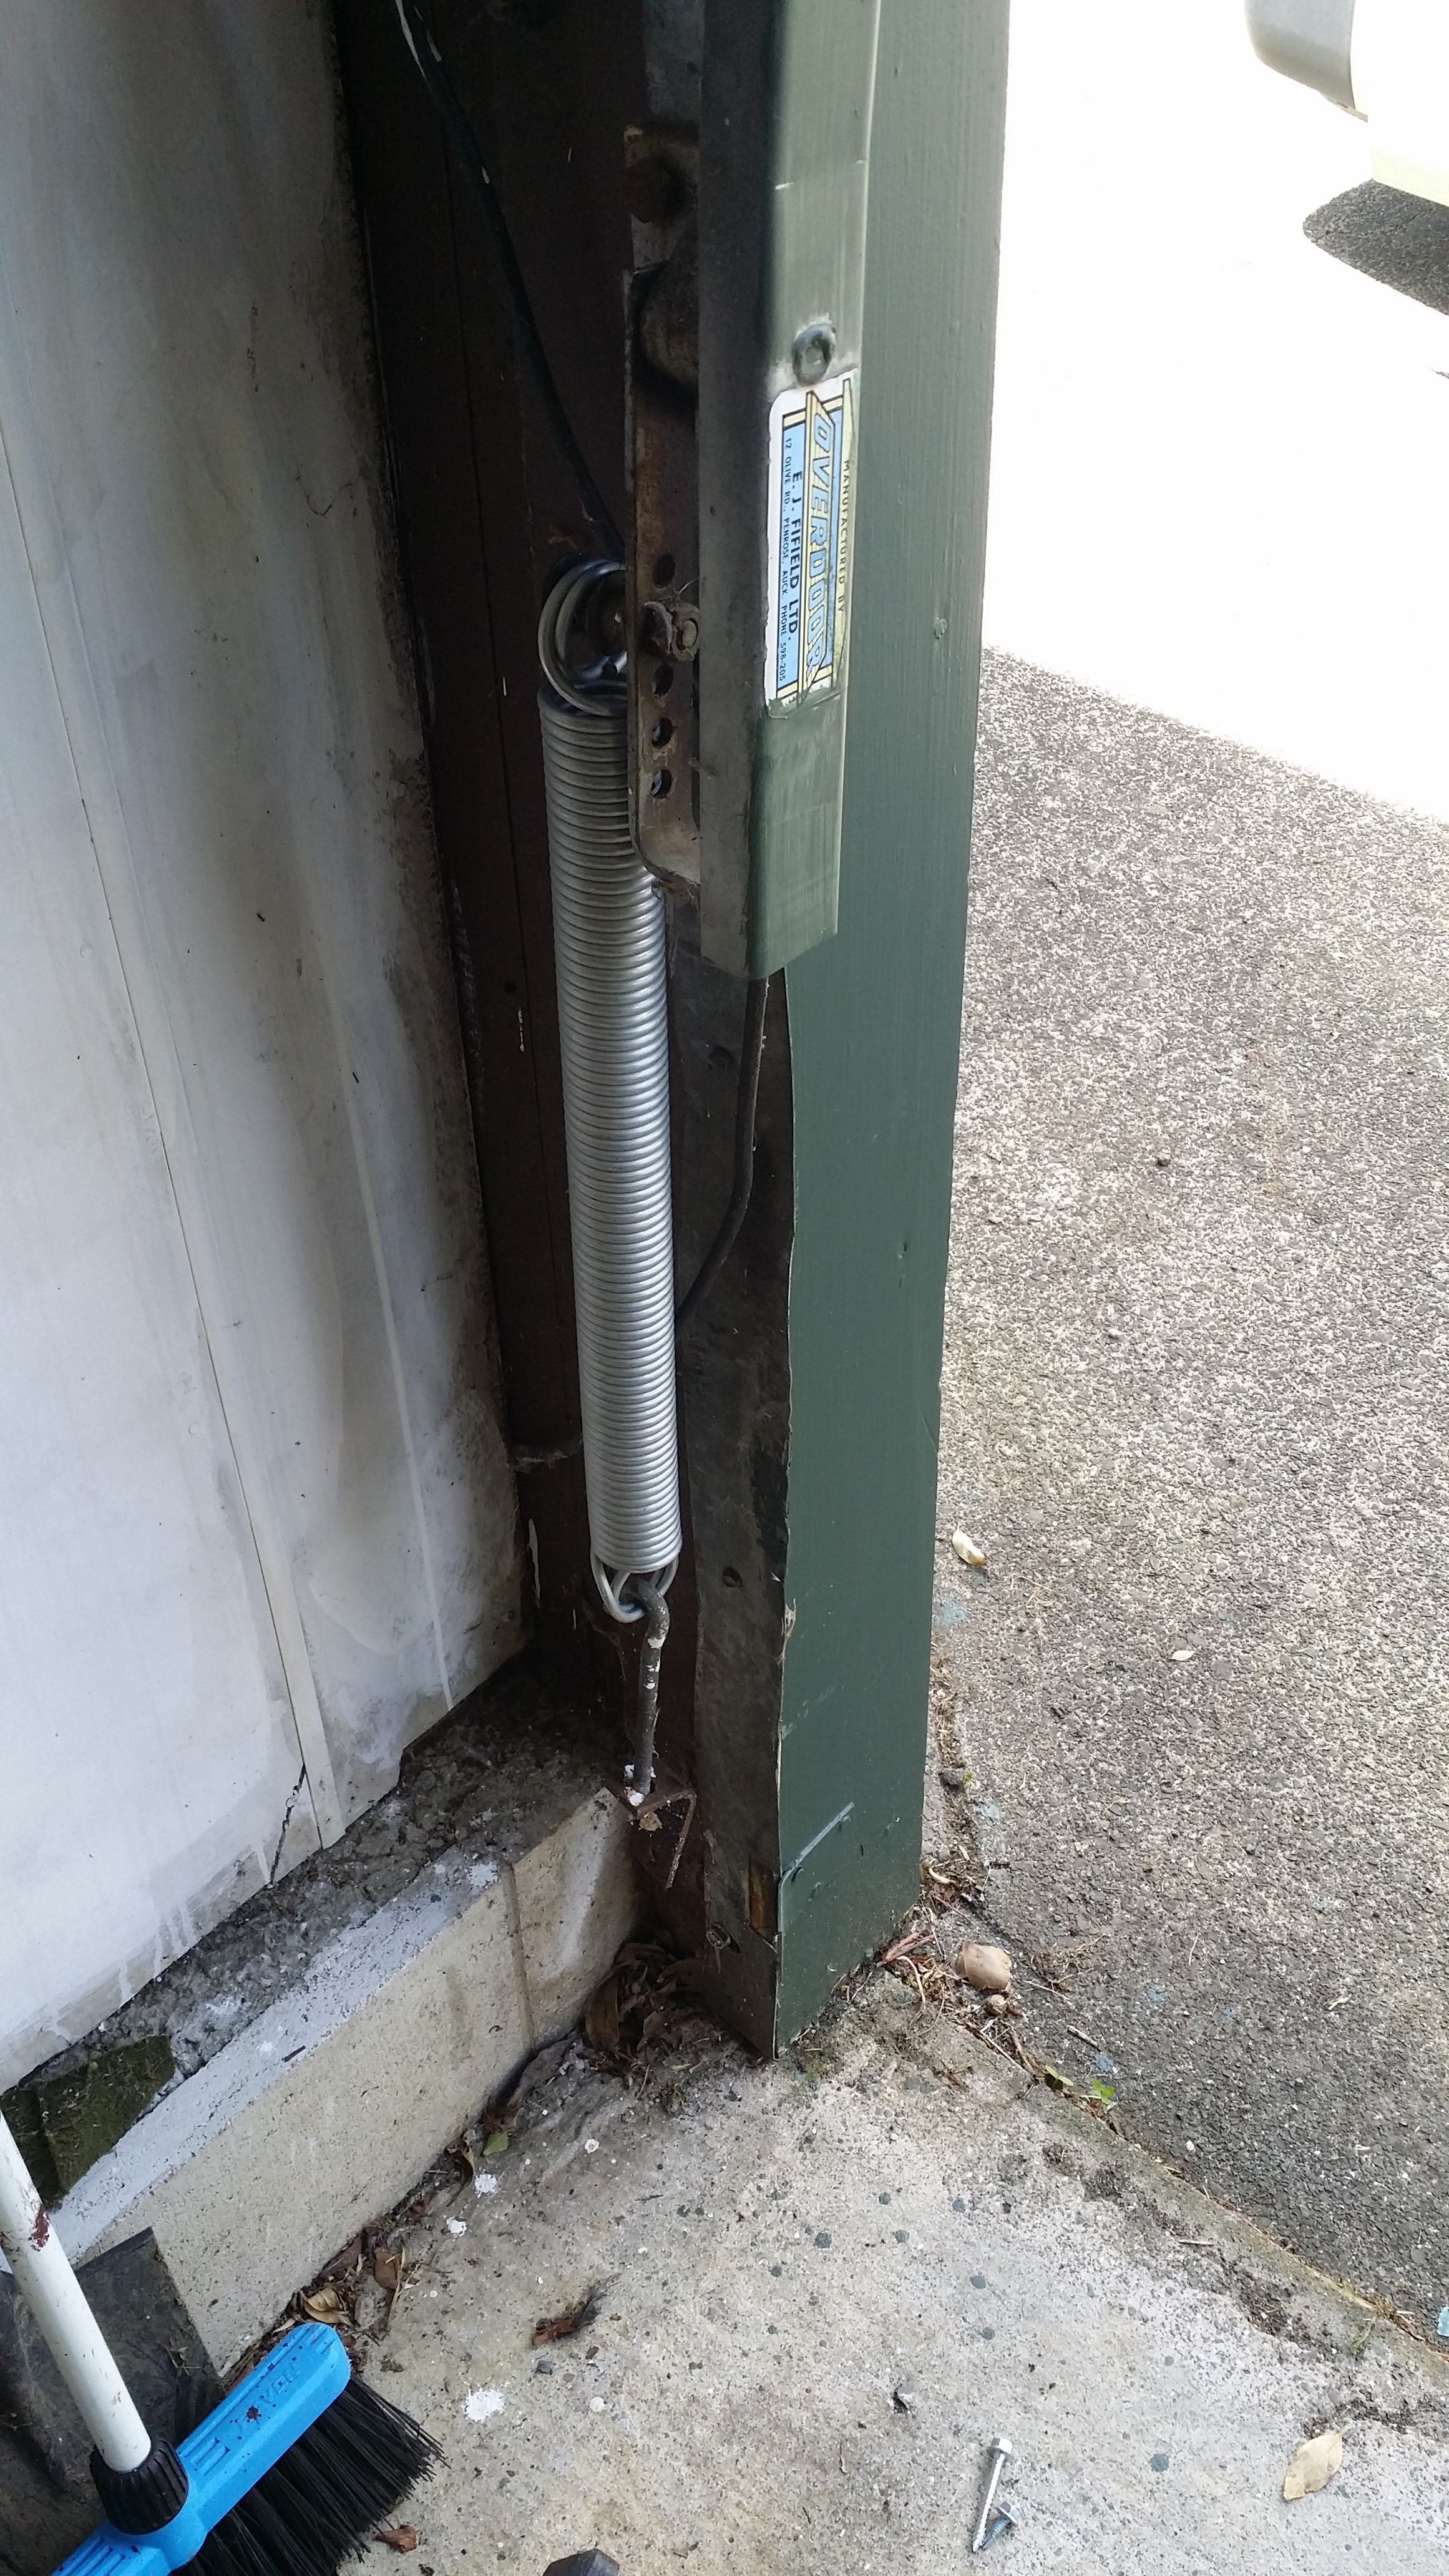 Creatice Garage Door Metal Cable Broke for Small Space